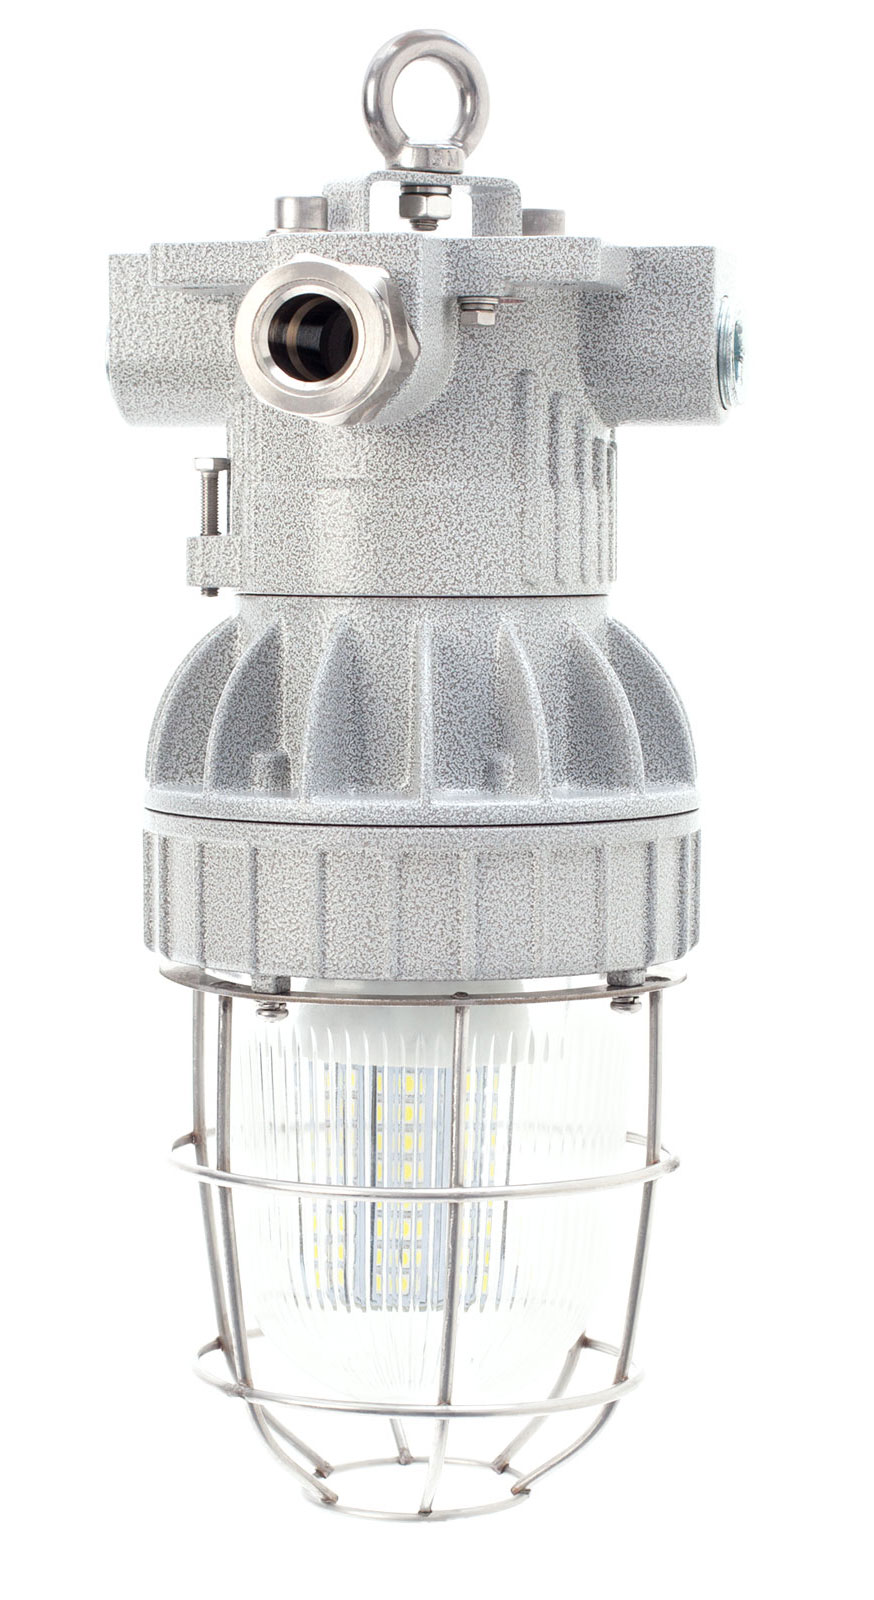 Взрывозащищенный светильник для освещения протяженных помещений (коридоров, тоннелей) СГР05 (EVGC-P220)